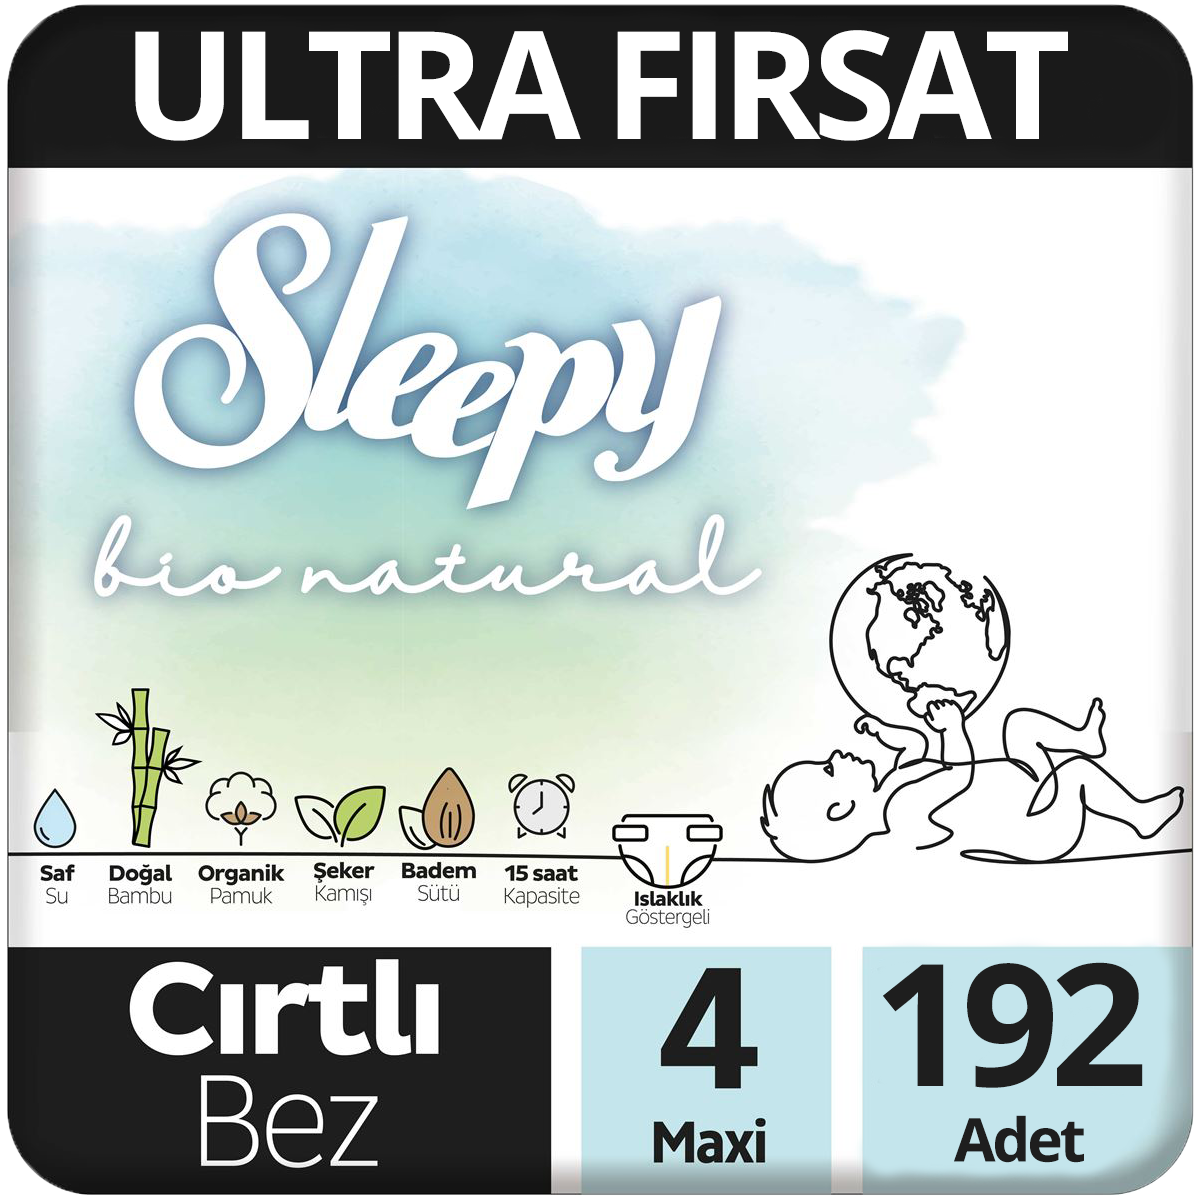 Sleepy Bio Natural Bebek Bezi 4 Beden Ultra Fırsat Paketi  2*96 192 Adet